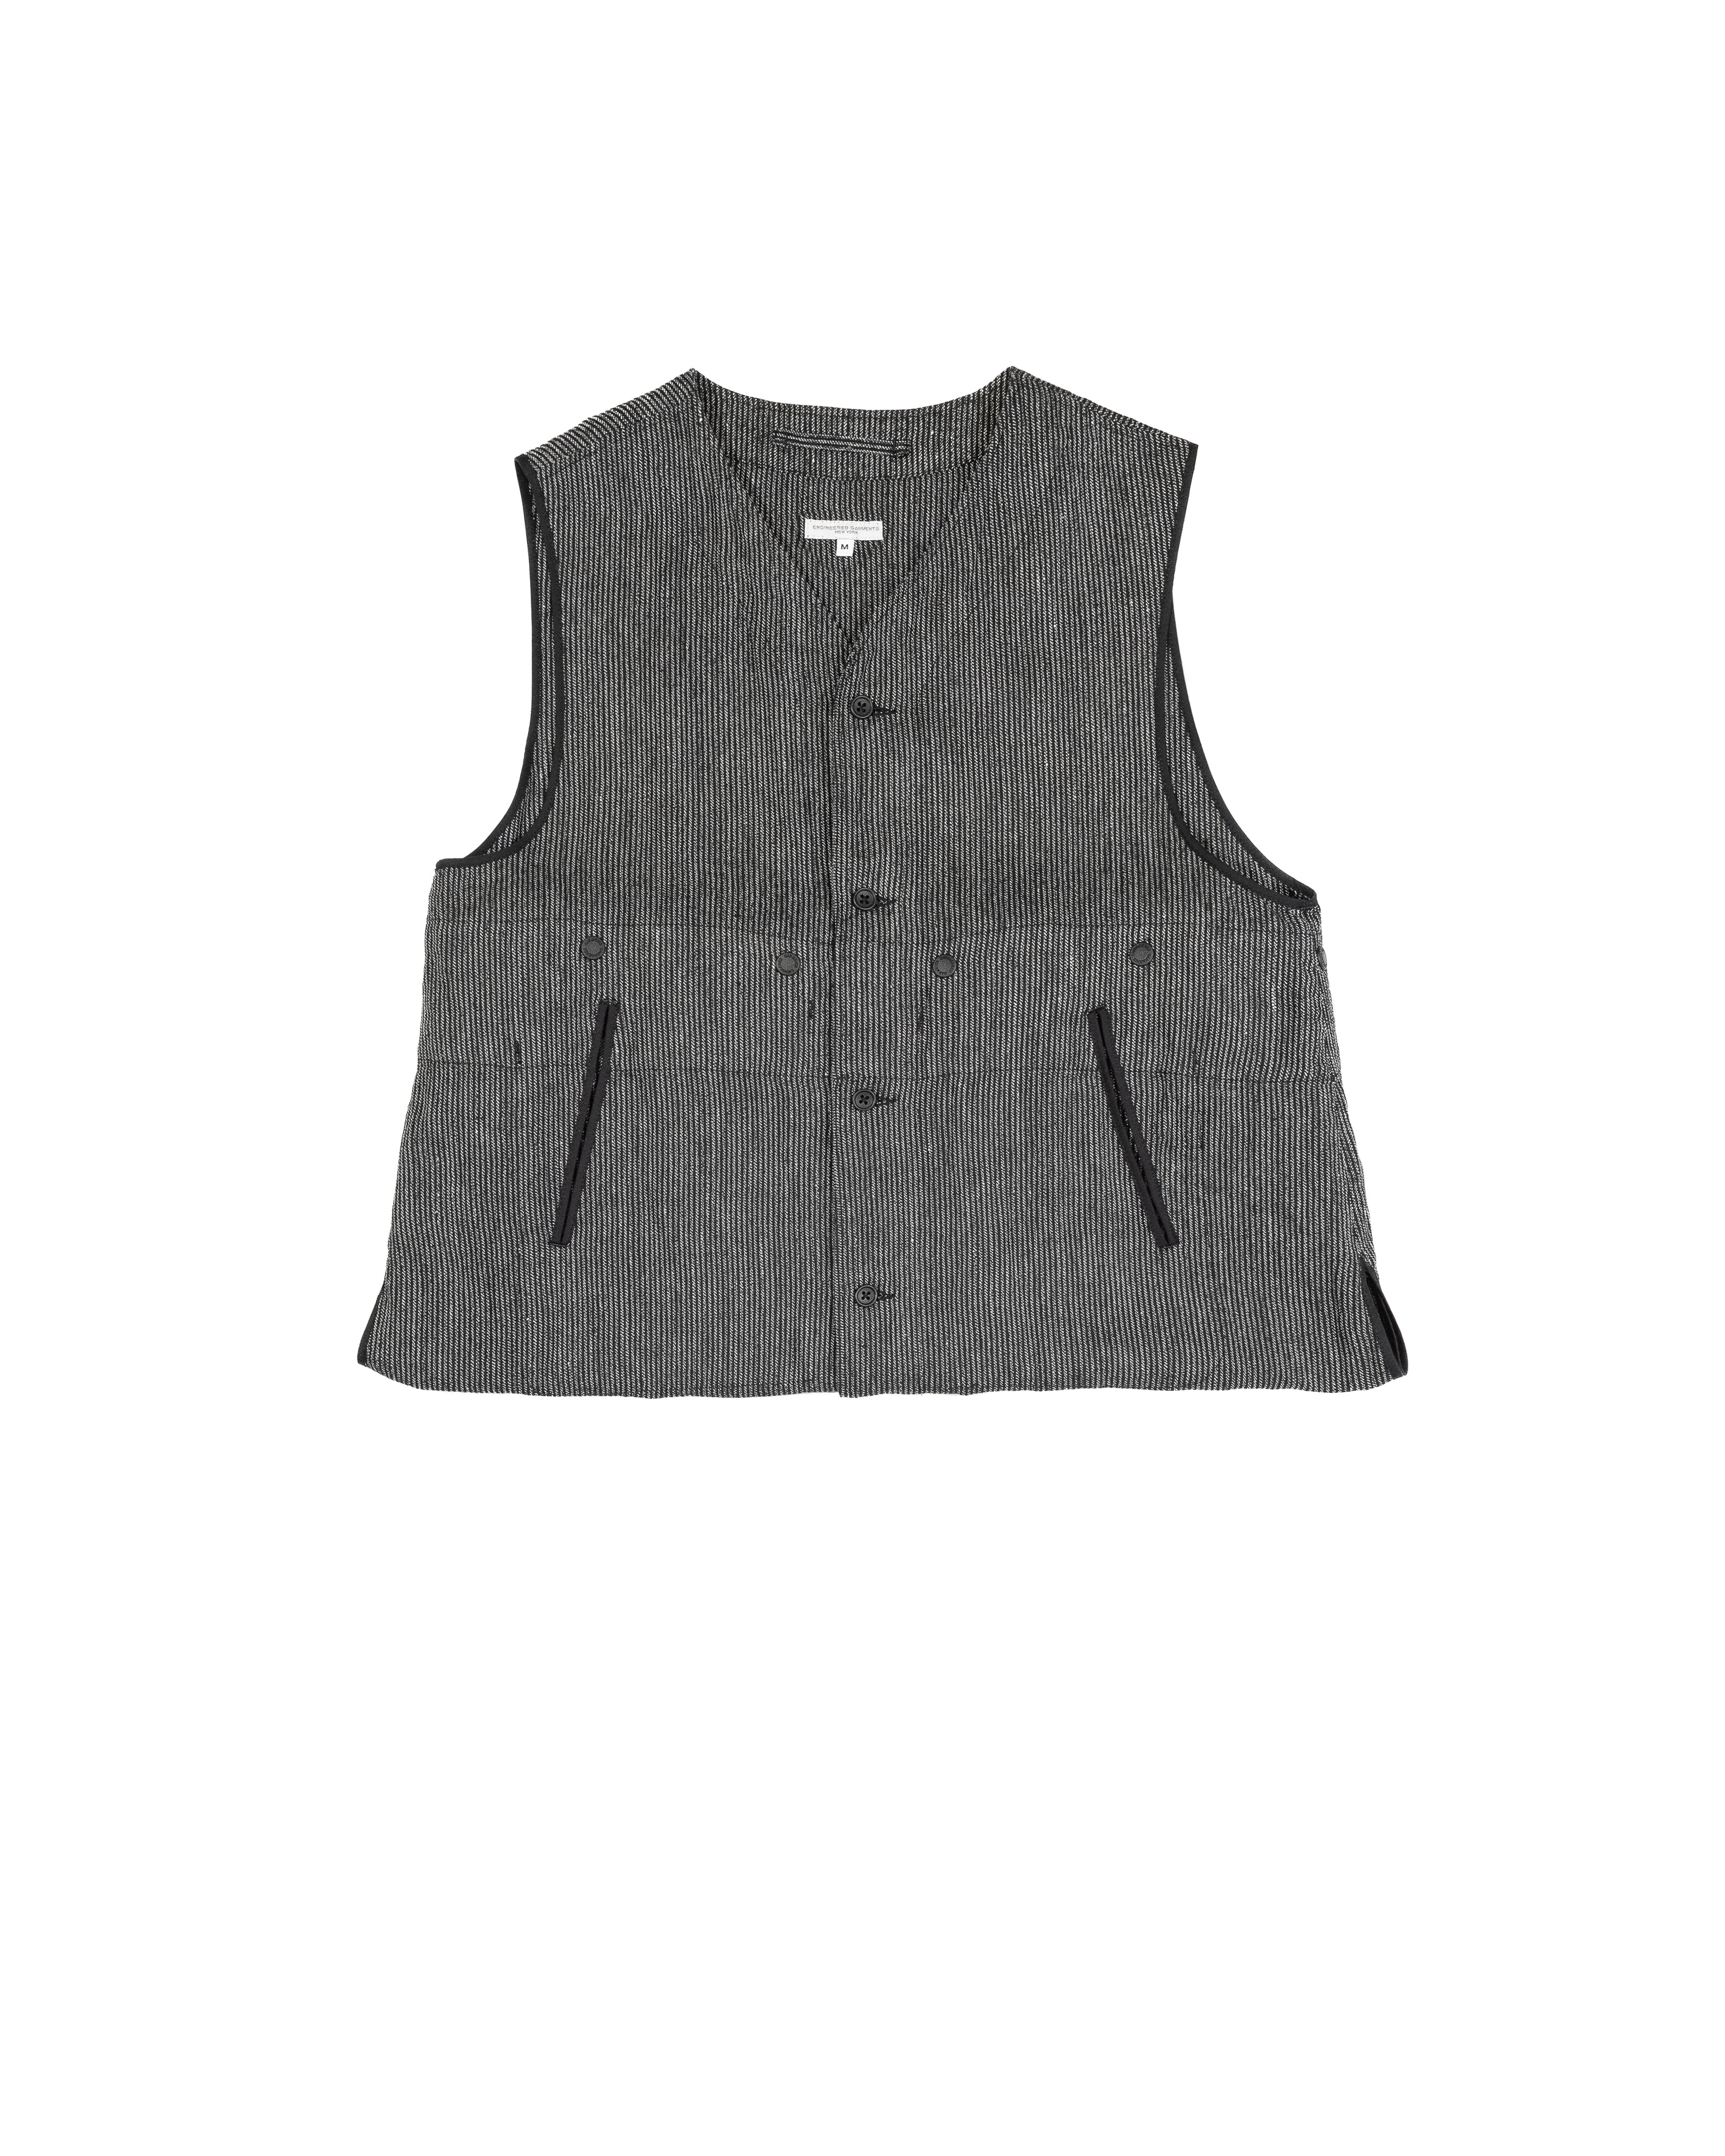 Liner Vest - Black / Grey Linen Stripe